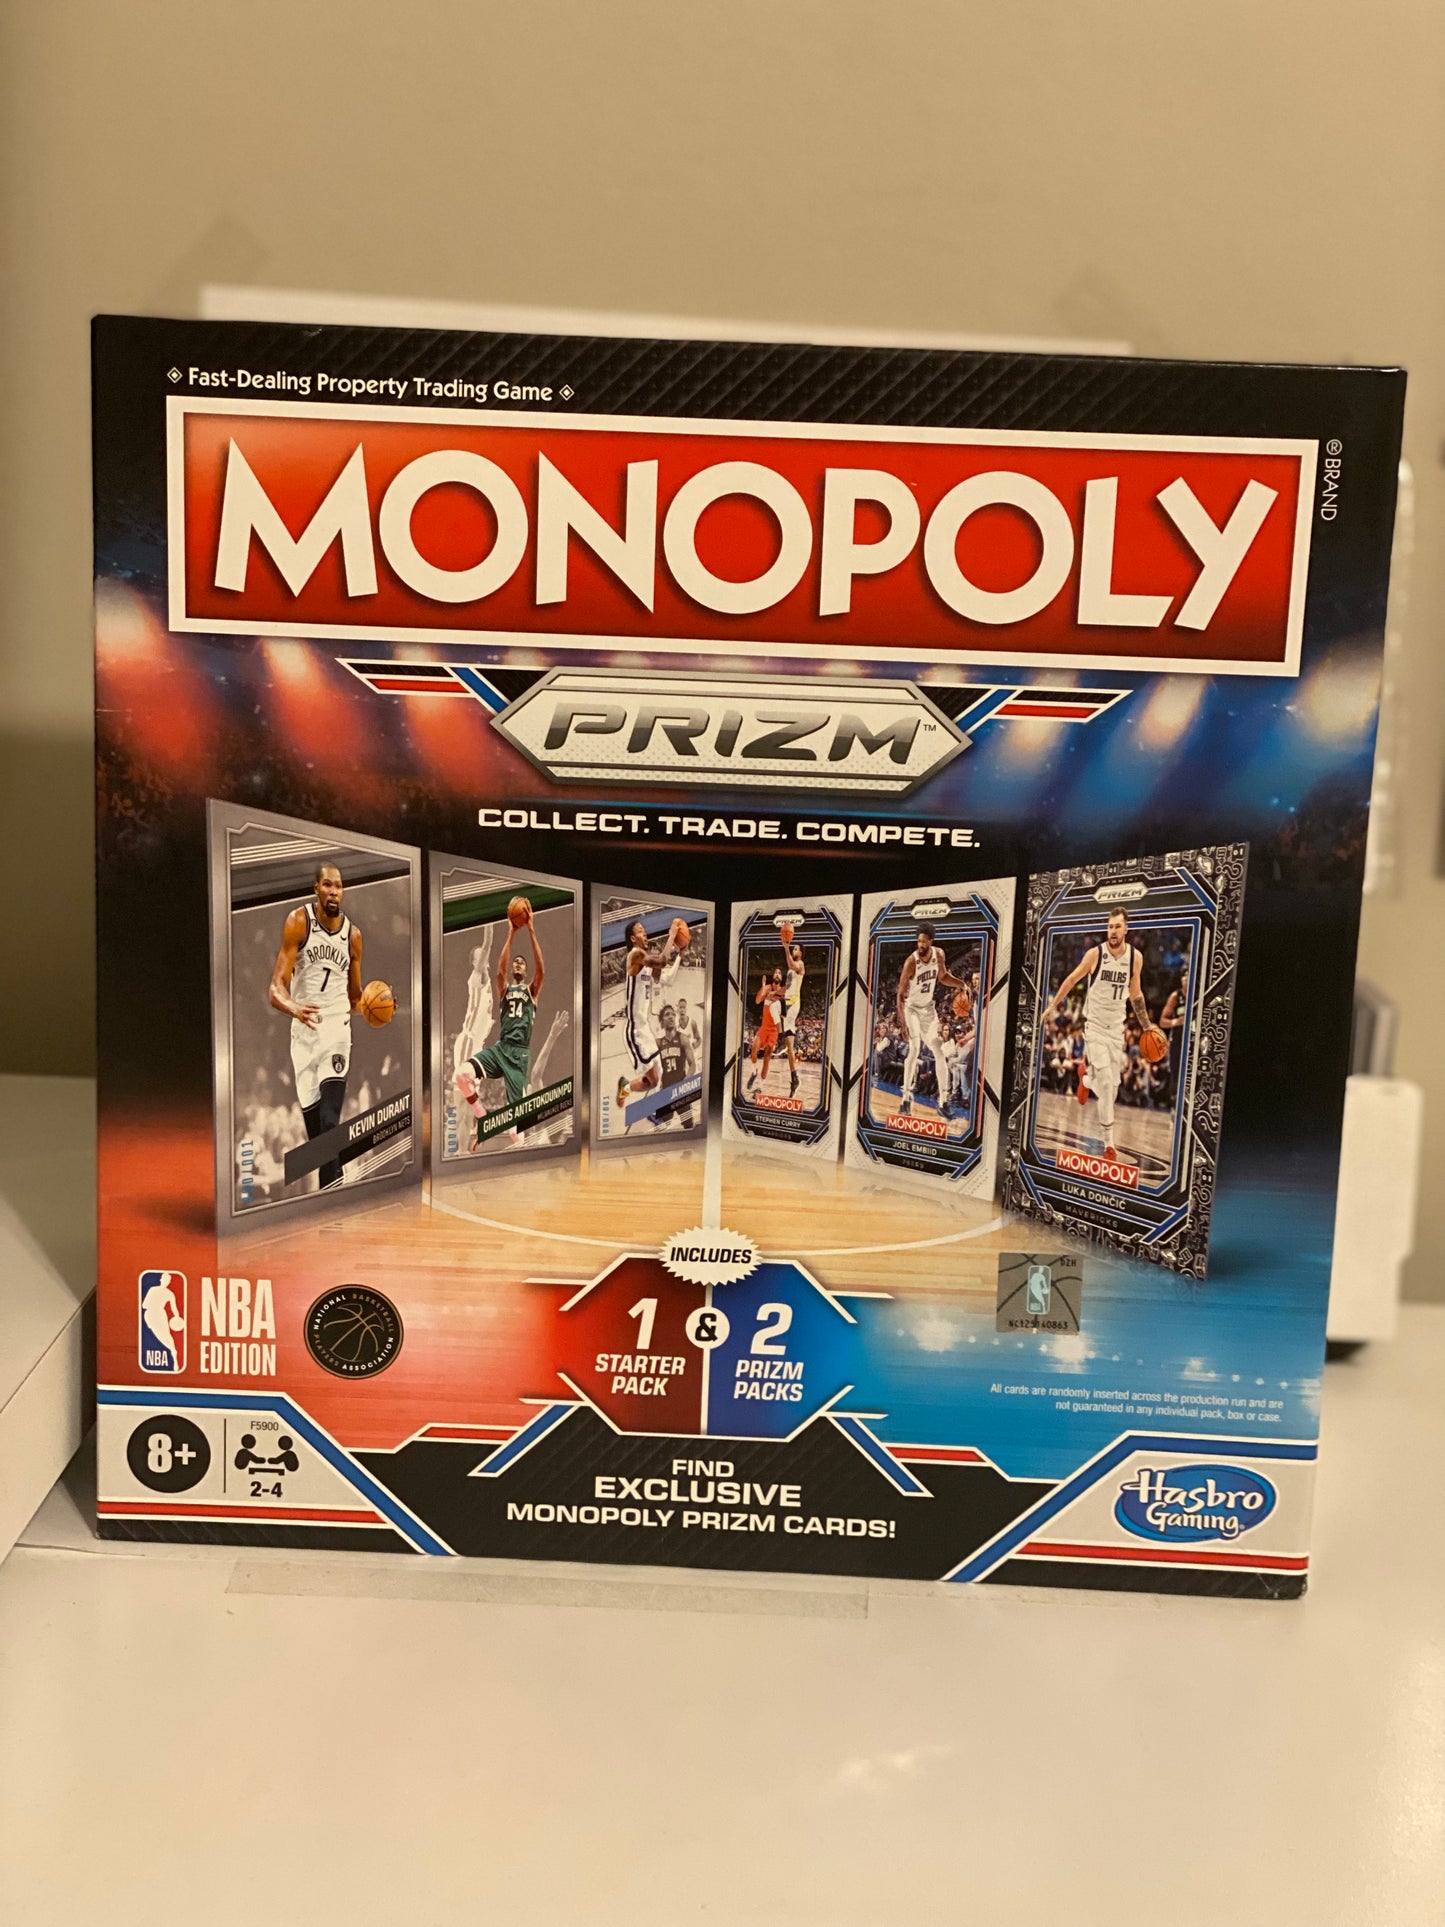 2022-23 Panini Prizm NBA Basketball Monopoly Game